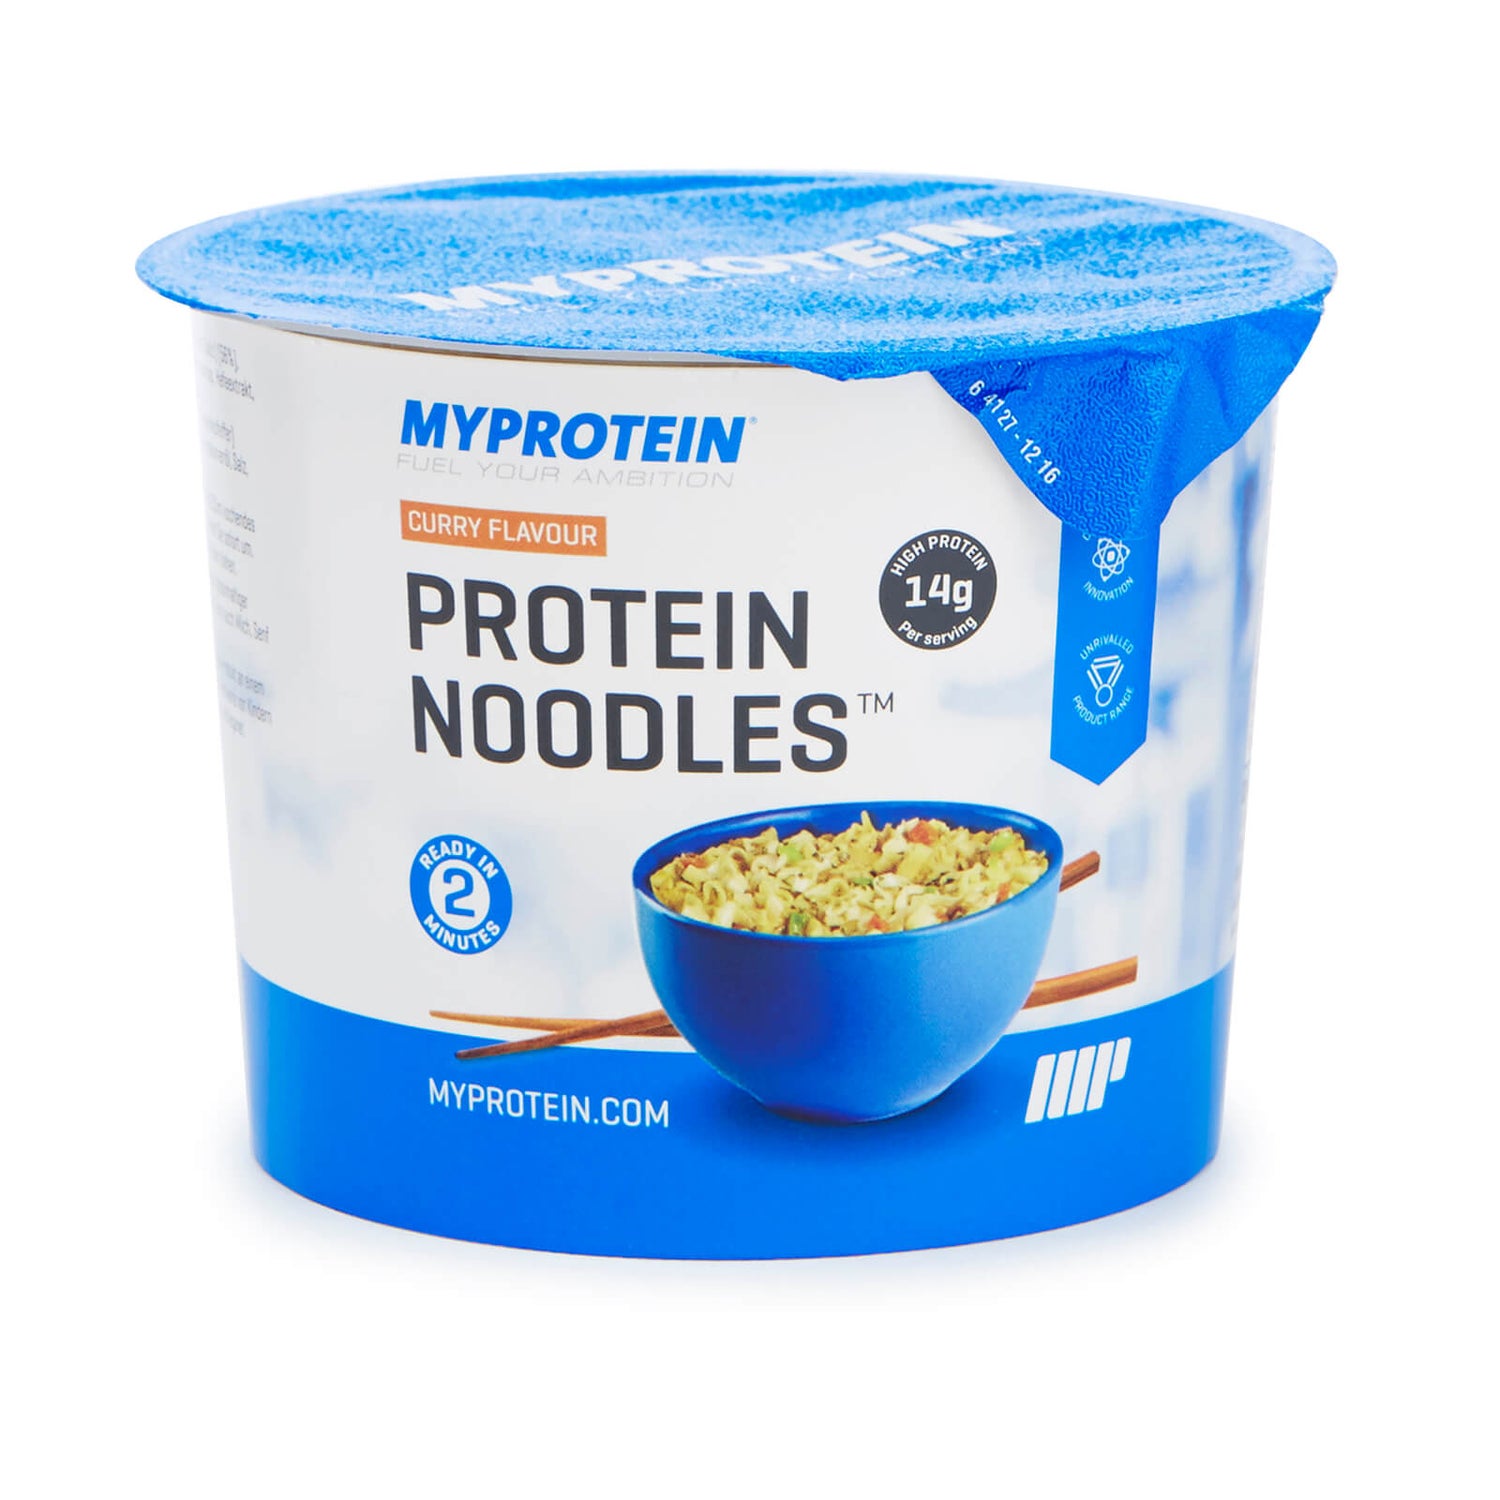 Myprotein Protein Noodles (Sample)